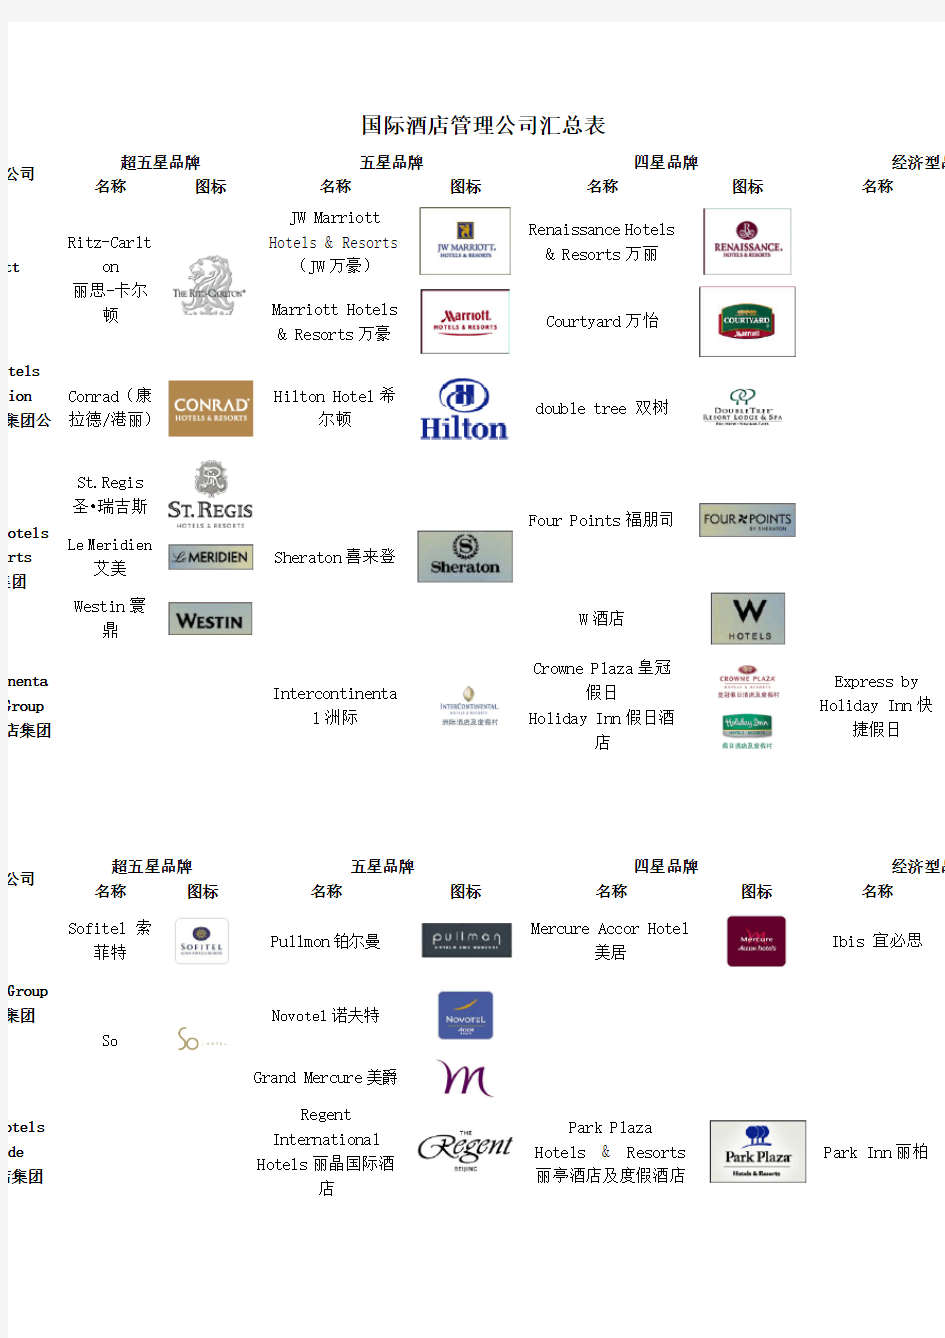 【房地产】国际酒店管理公司品牌分级汇总